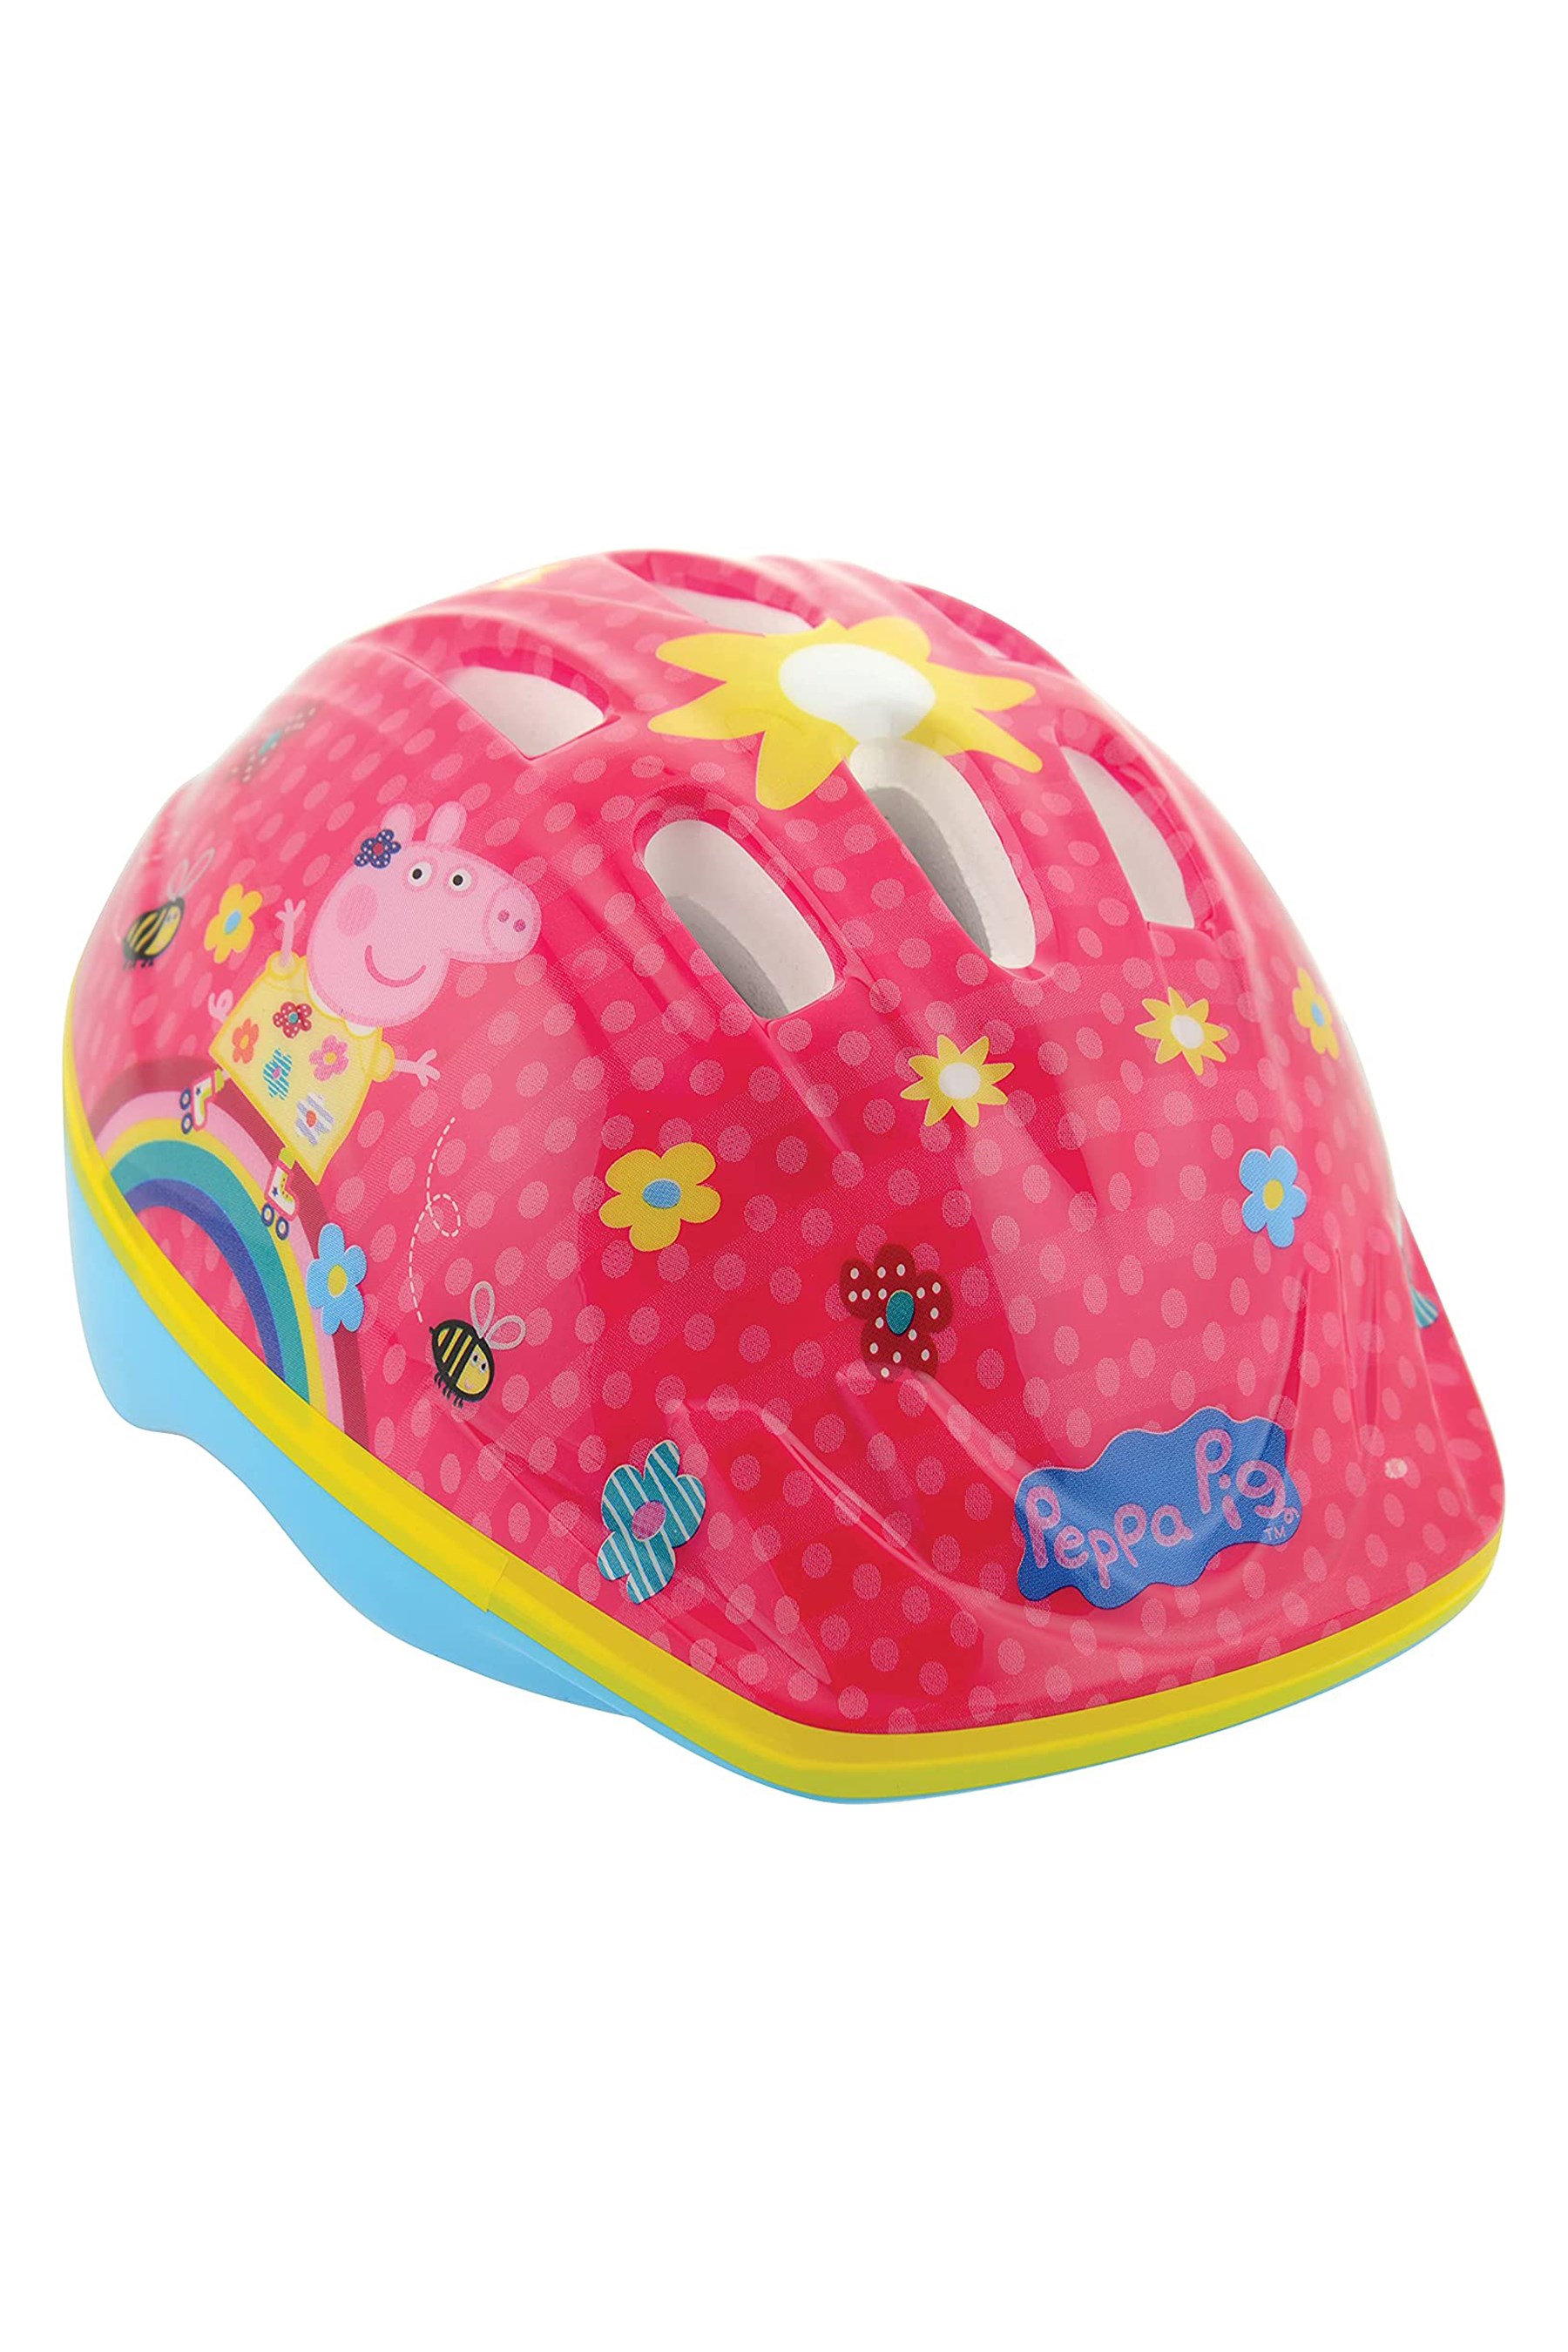 Peppa Pig Kids Cycling Helmet 48-52cm -